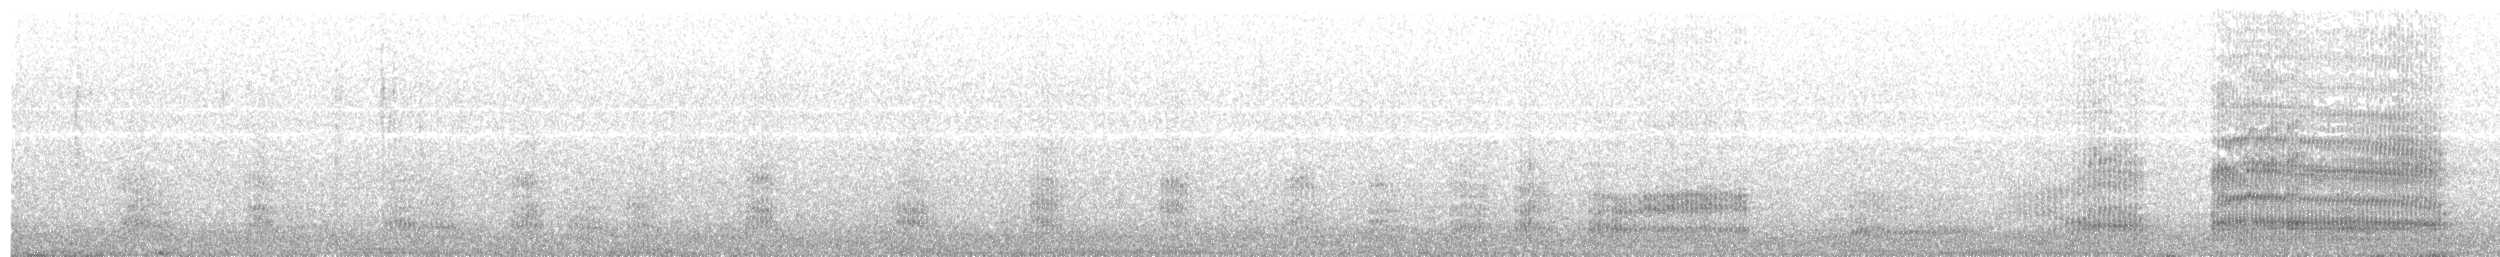 紐澳紅嘴鷗(novaehollandiae/forsteri) - ML203971481